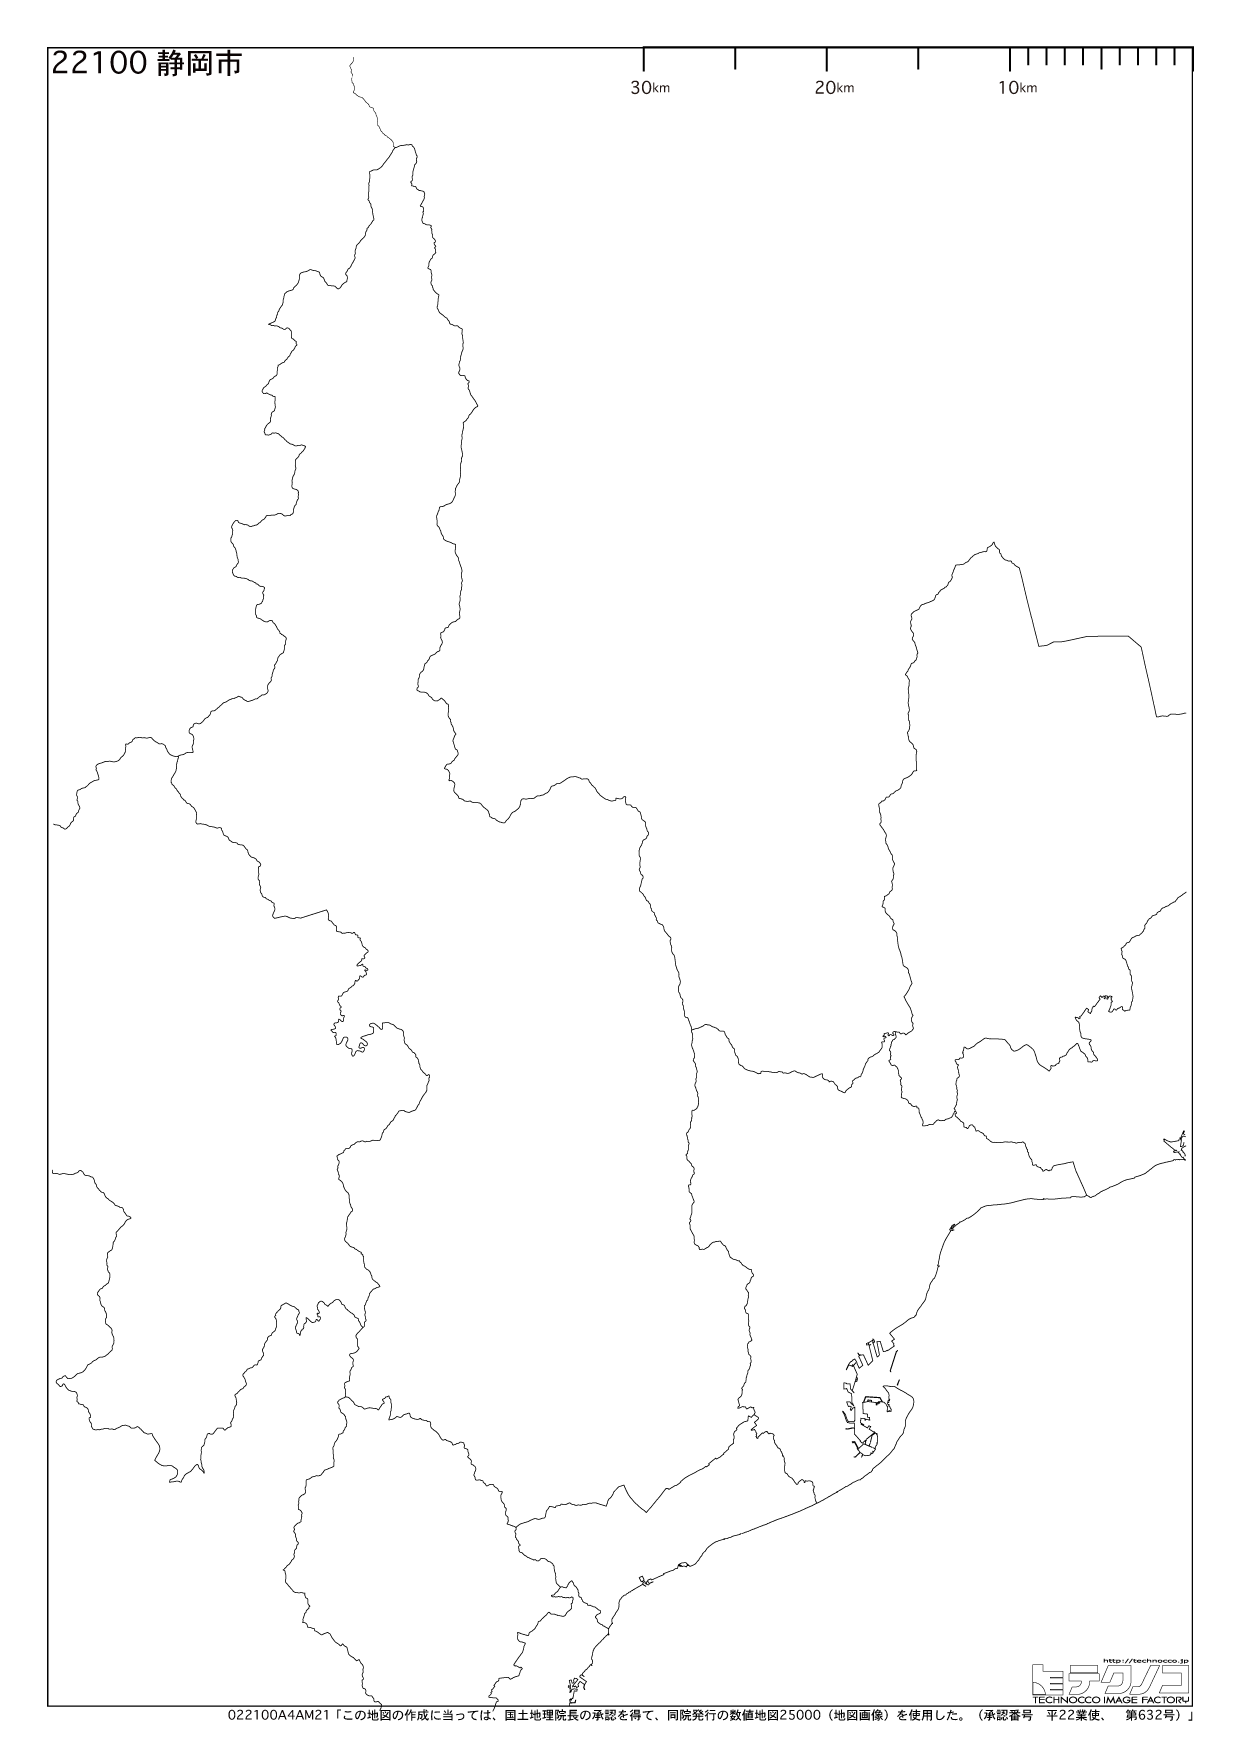 静岡県の白地図と市町村の合併情報